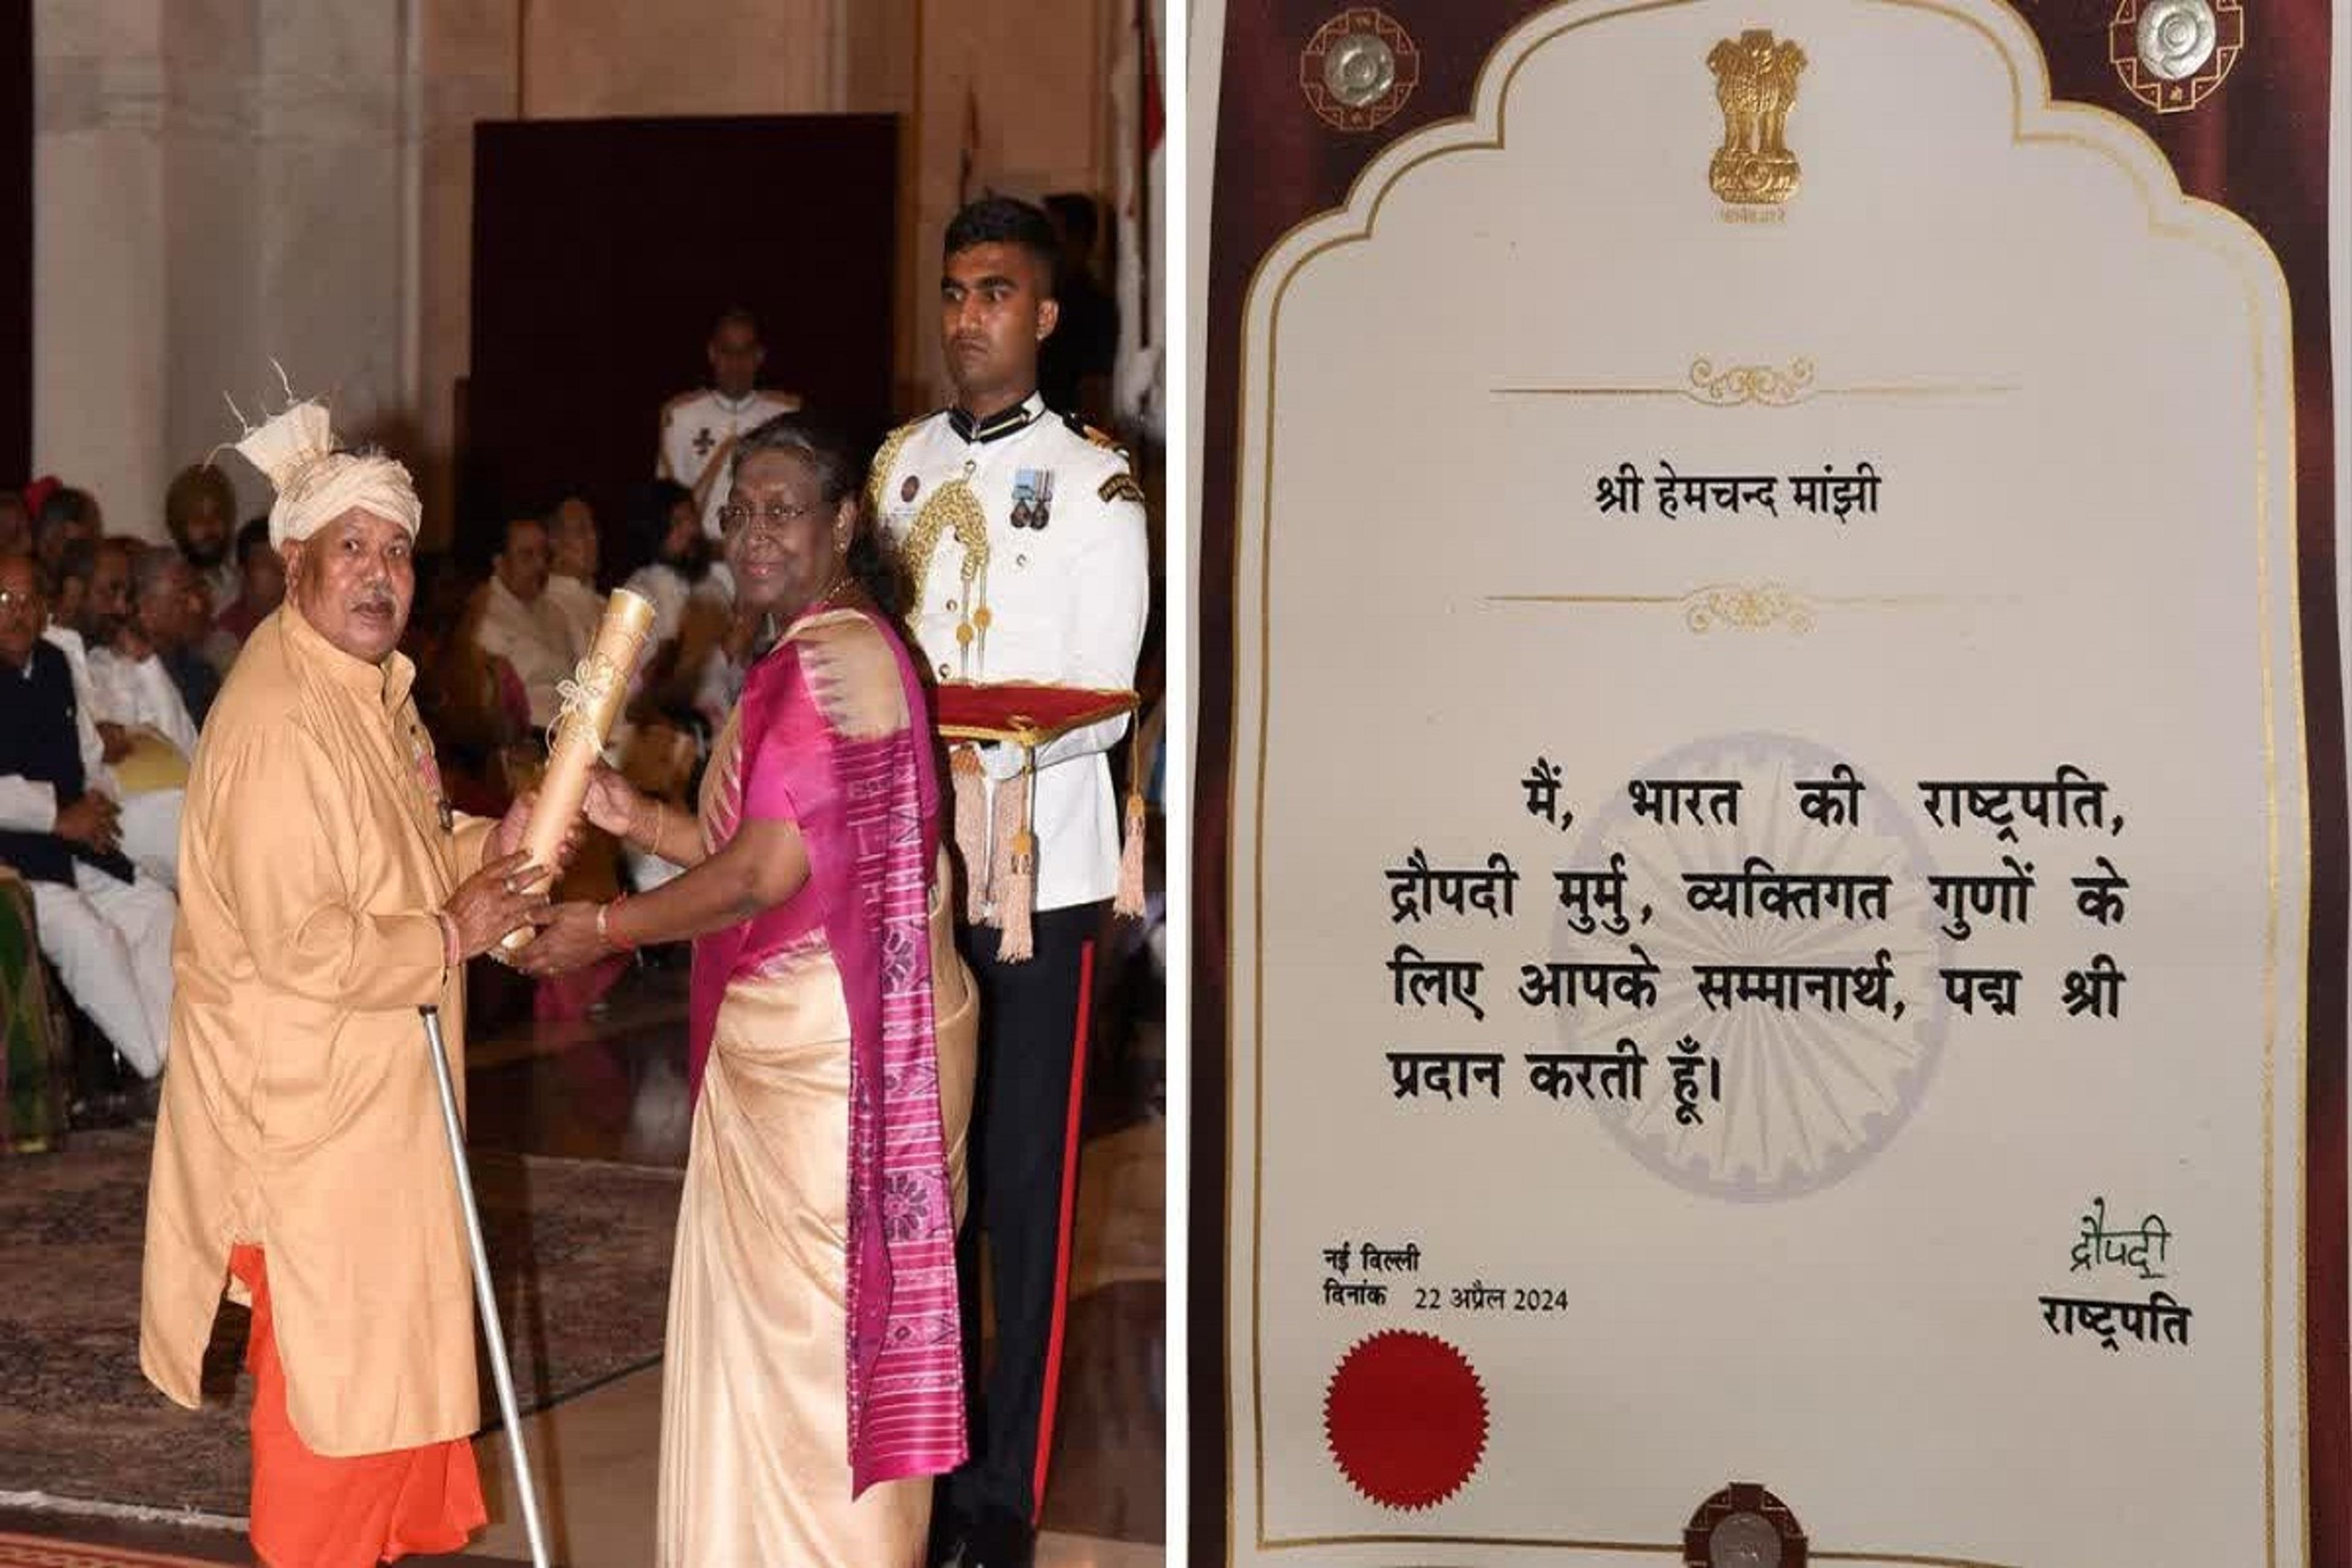 नारायणपुर के वैद्यराज हेमचंद मांझी को मिला पद्मश्री पुरस्कार, राष्ट्रपति ने
दिल्ली में किया सम्मानित